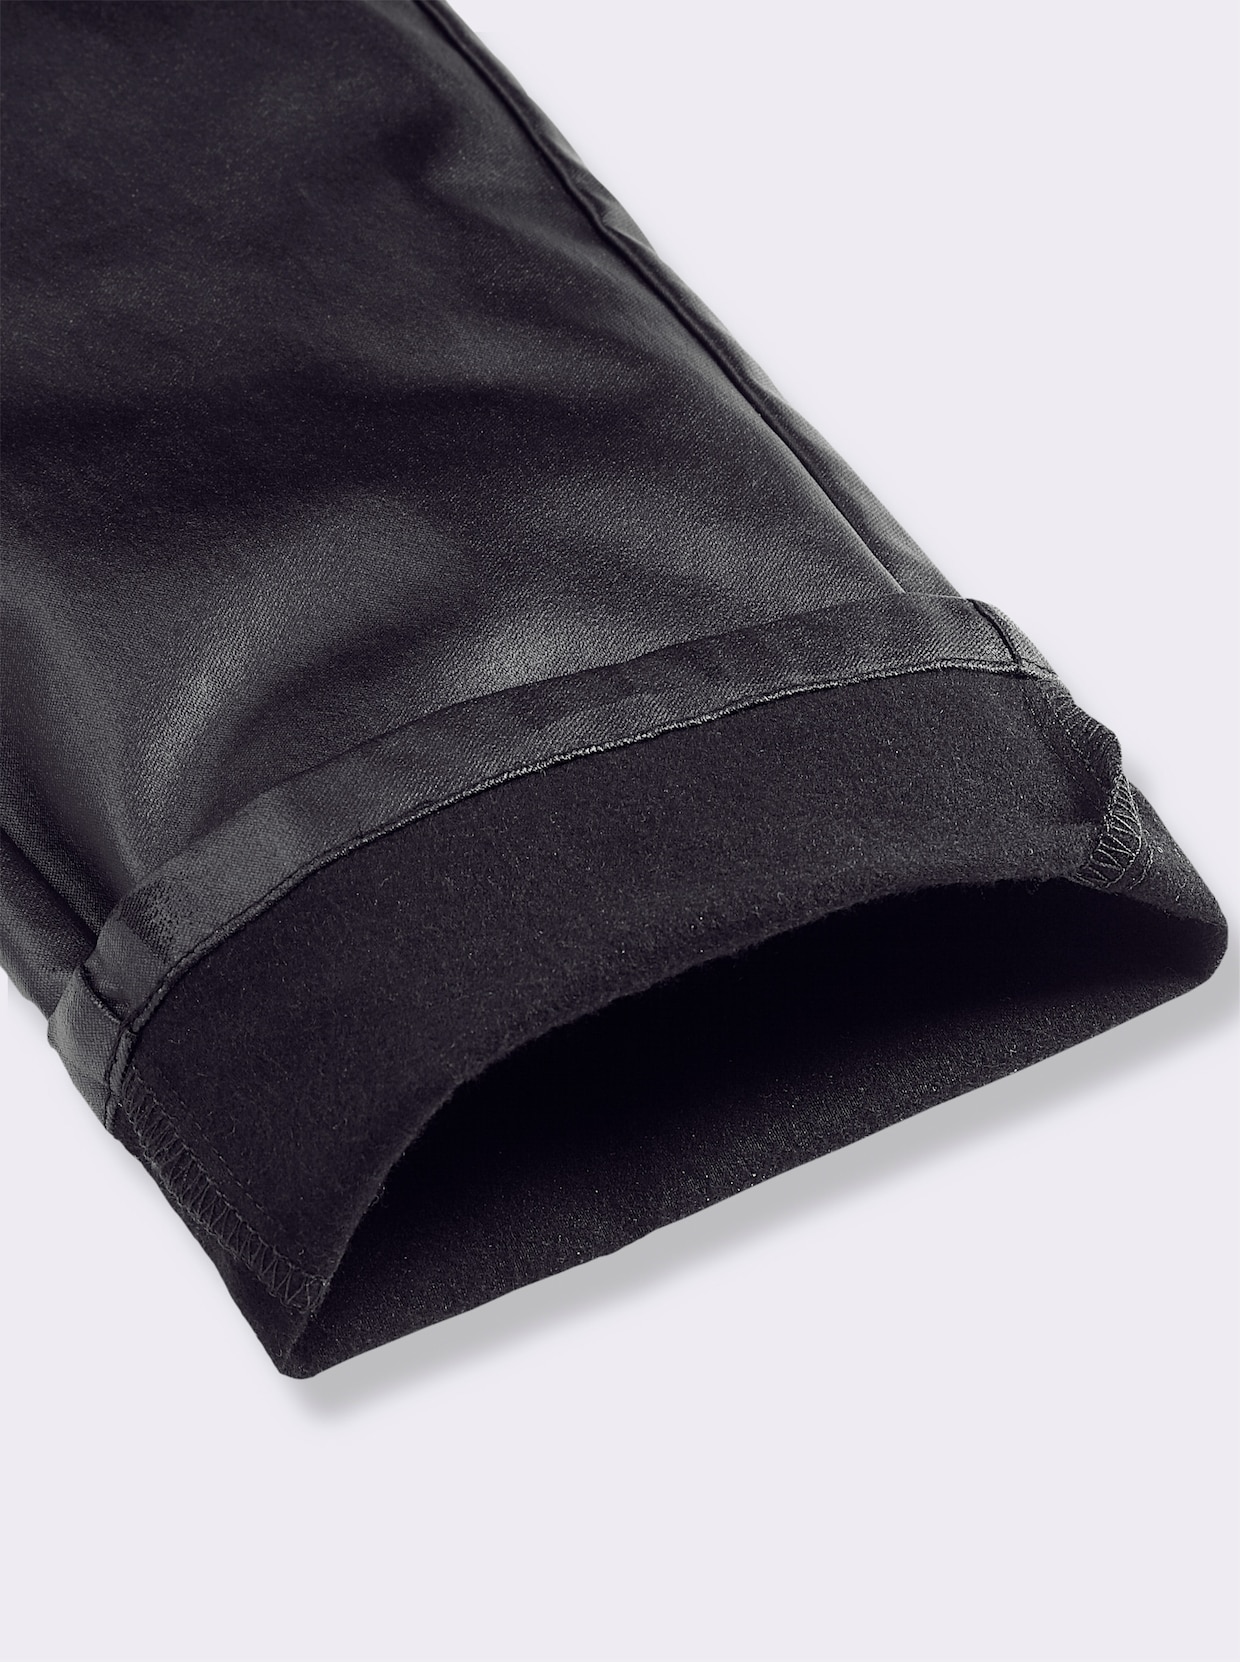 Pantalon thermique - noir